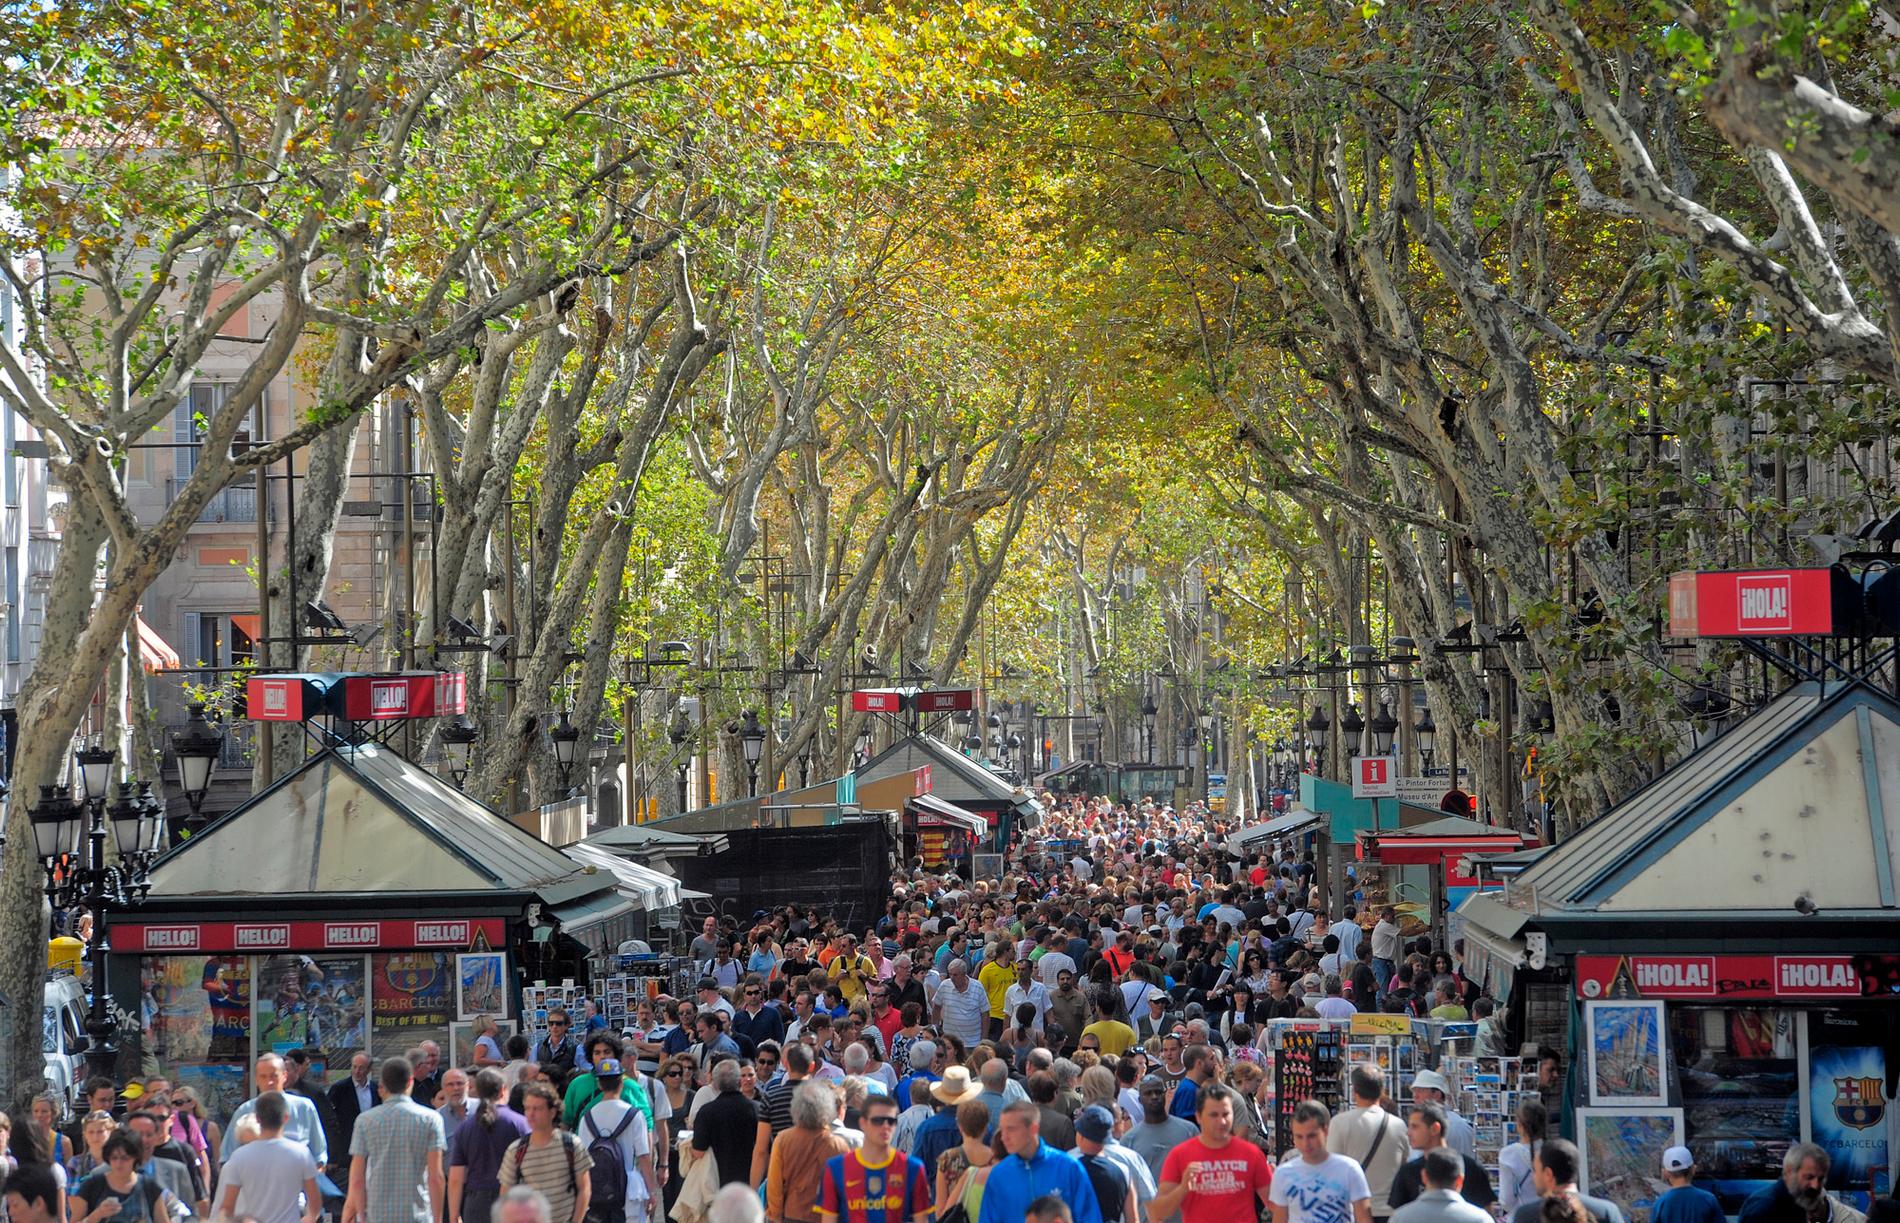 Folkmassa i centrala Barcelona, där gaturånen har ökat rejält på senare tid.